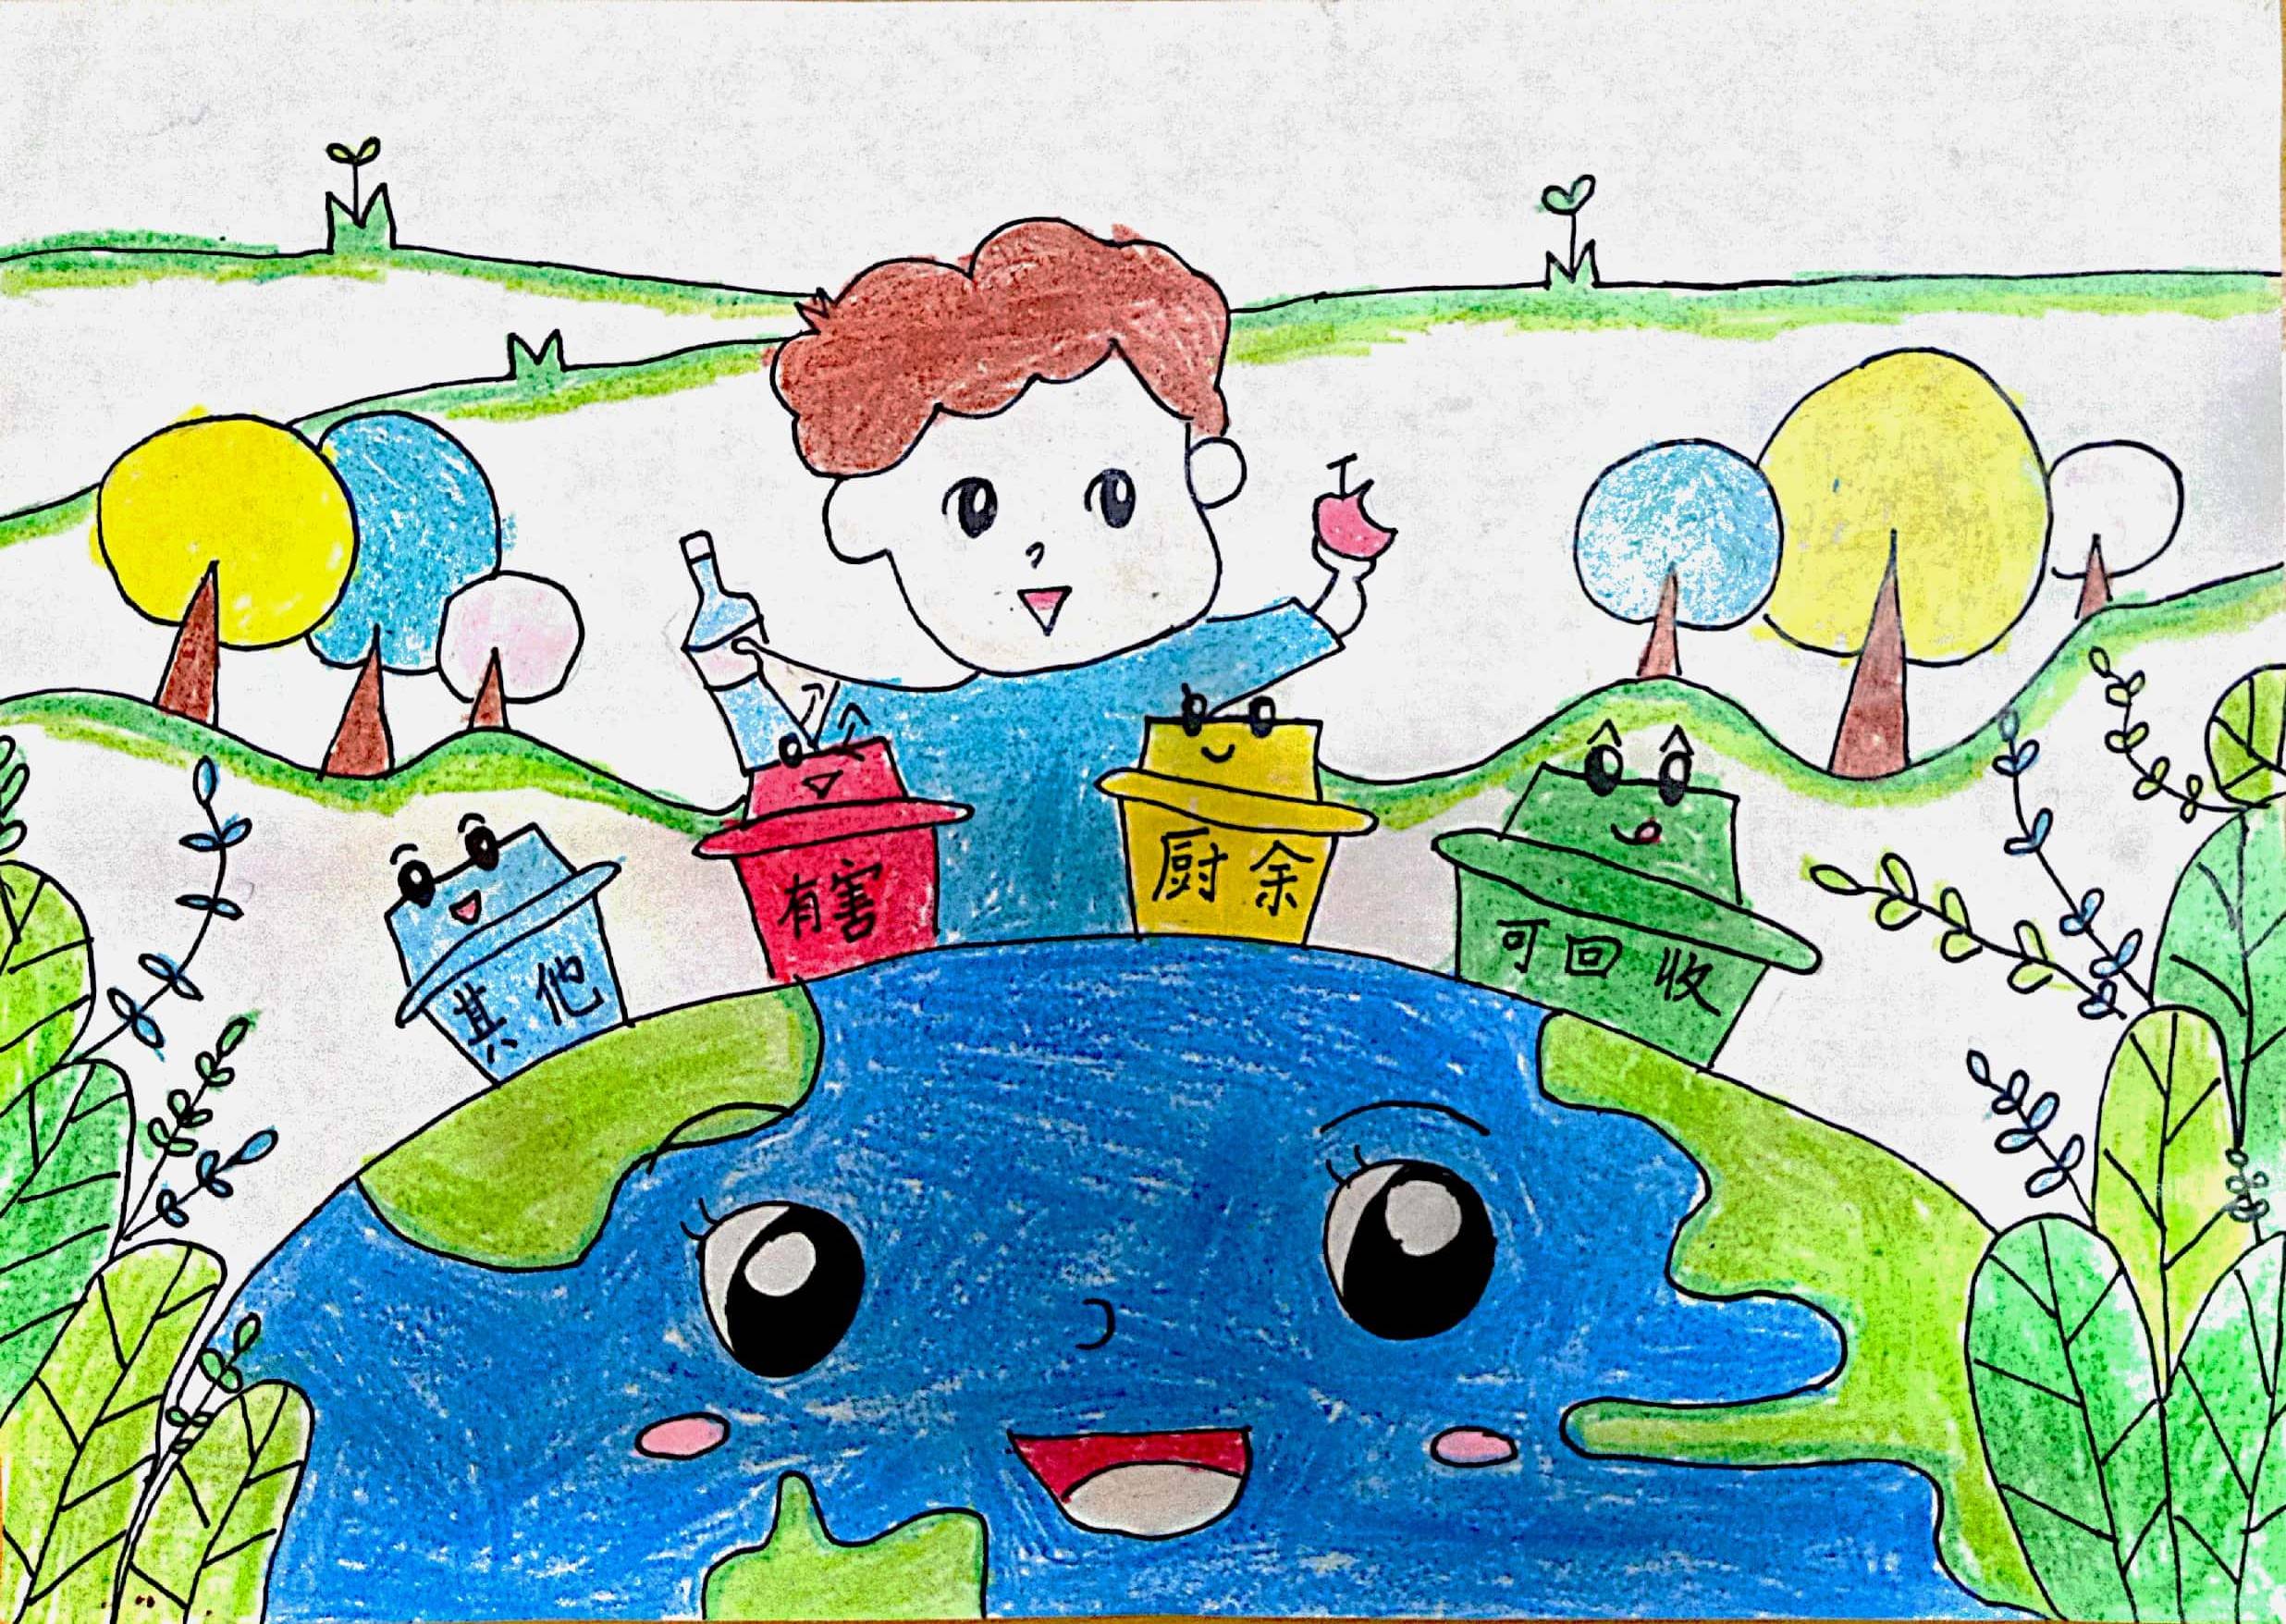 苏州垃圾分类主题绘画倡导绿色环保理念